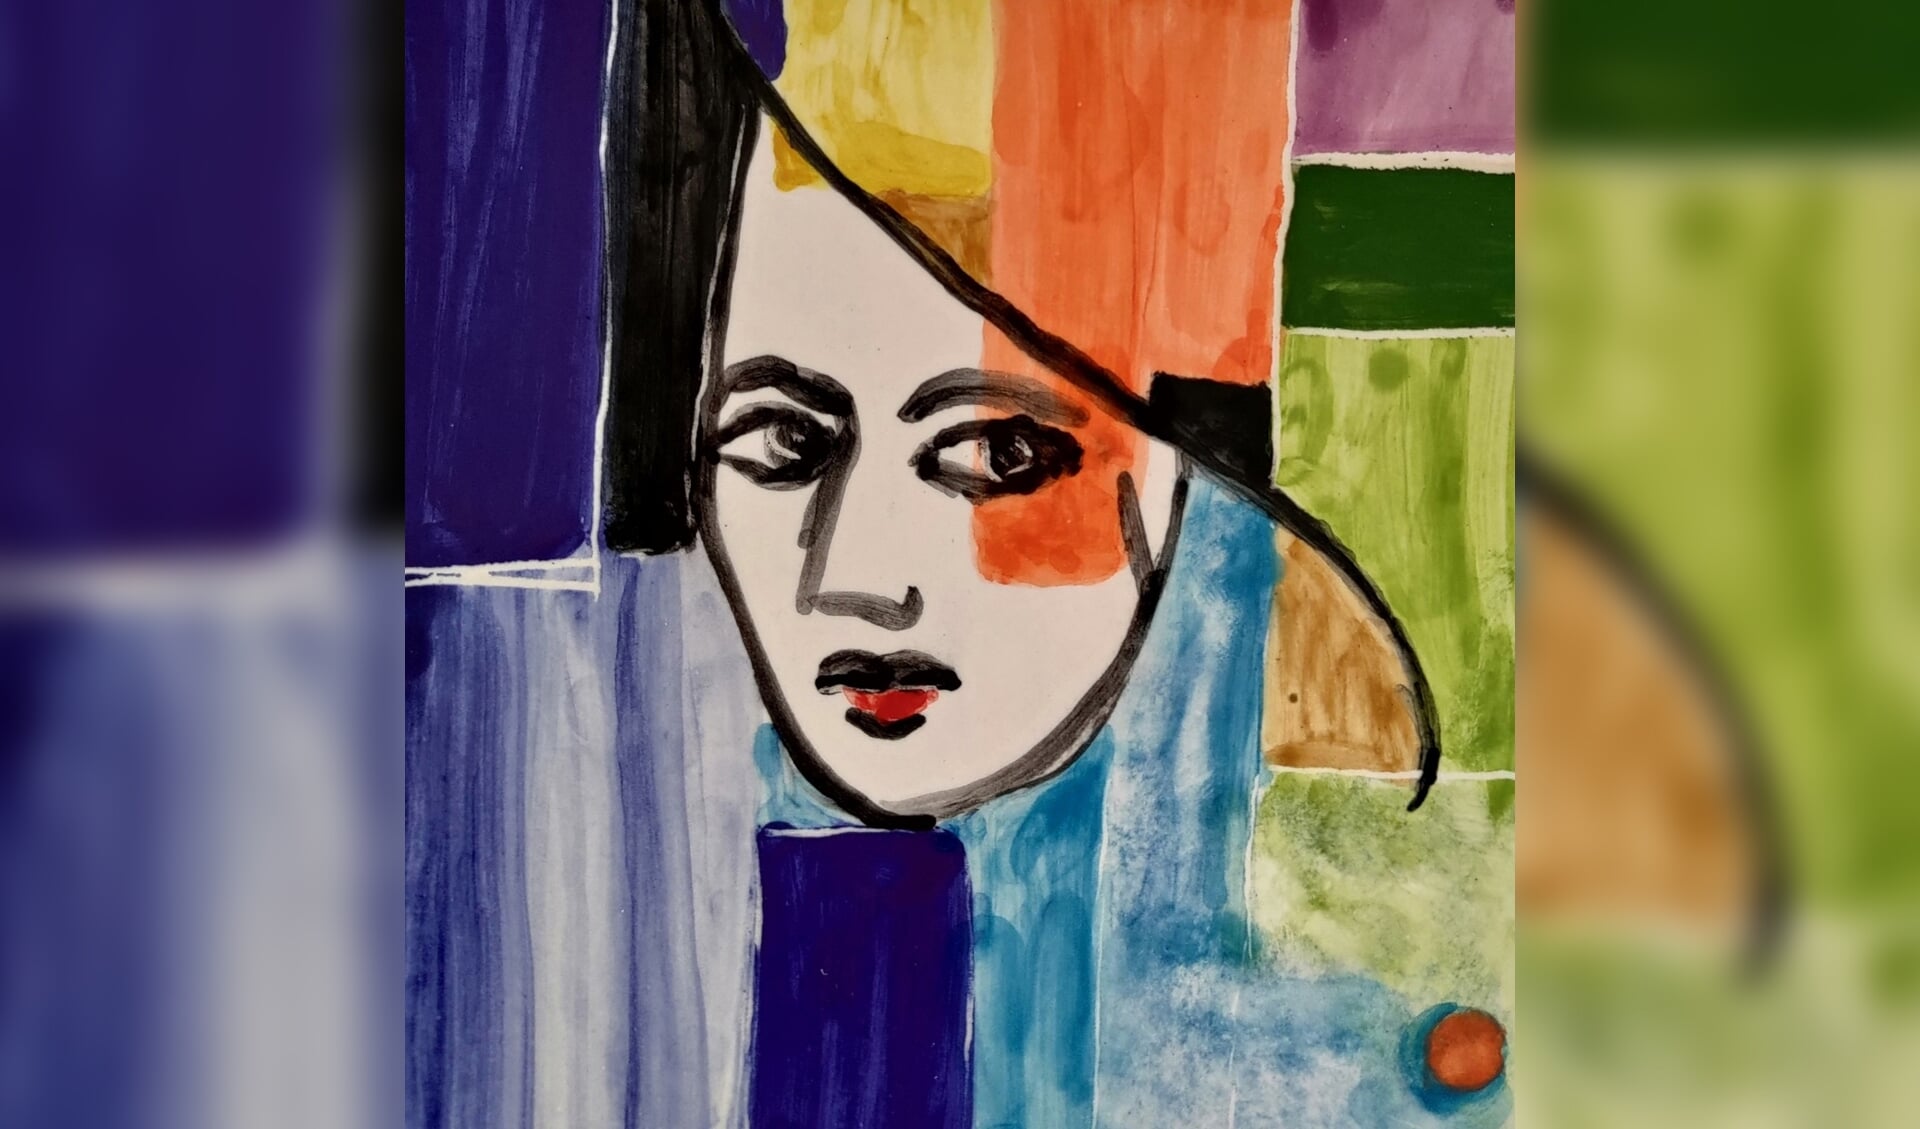 Kunstwerk van Farida te zien tijdens kunstweekend Beetsterzwaag.